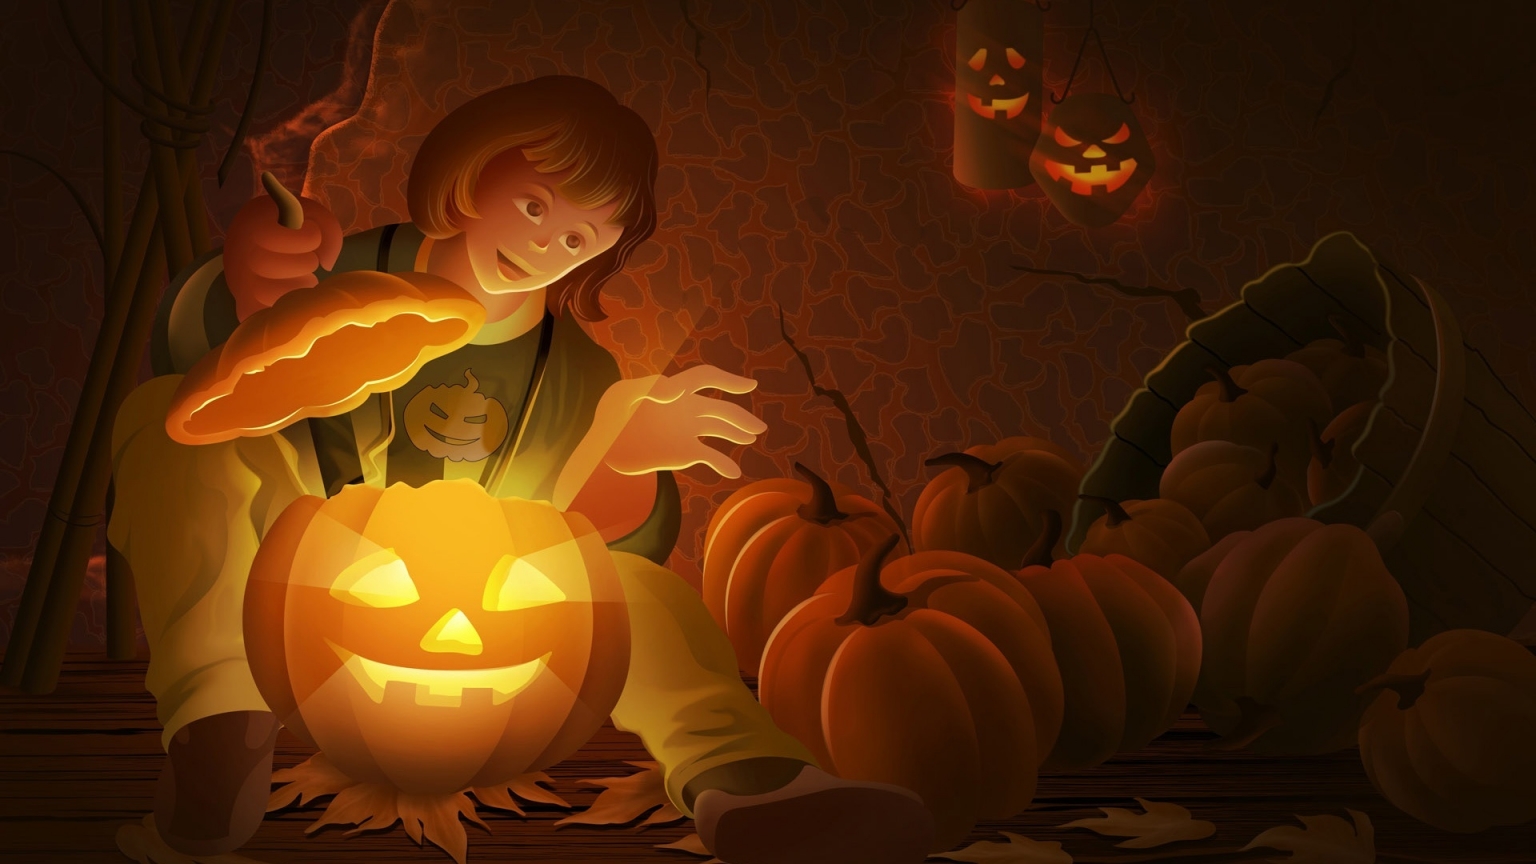 Cool Halloween Pumpkin for 1536 x 864 HDTV resolution